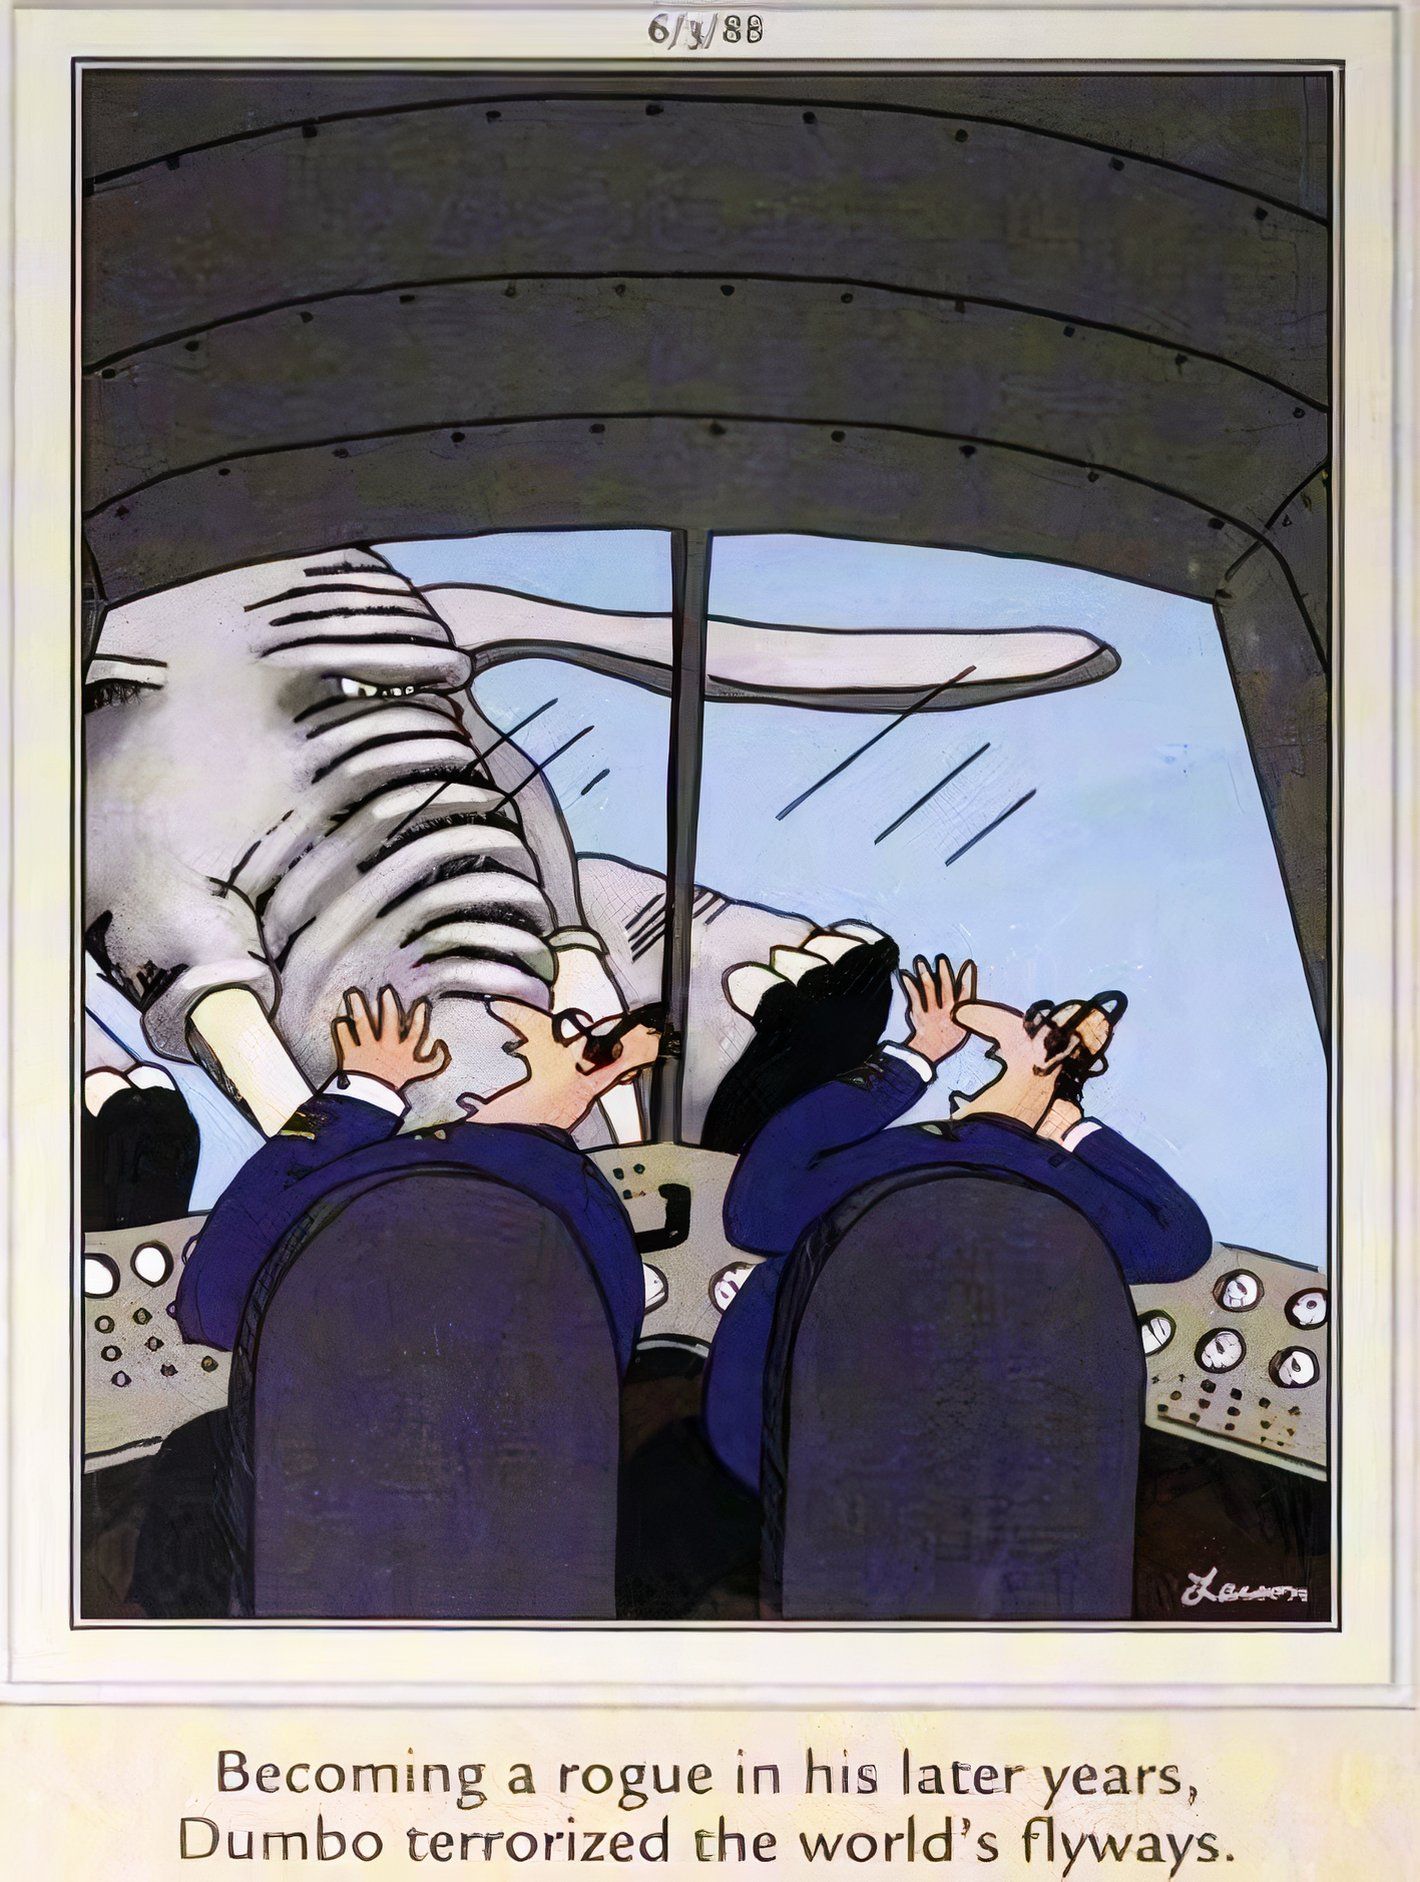 Far Side, 3 de junho de 1988, pilotos de avião reagem com horror quando Dumbo bombardeia seu avião em pleno voo